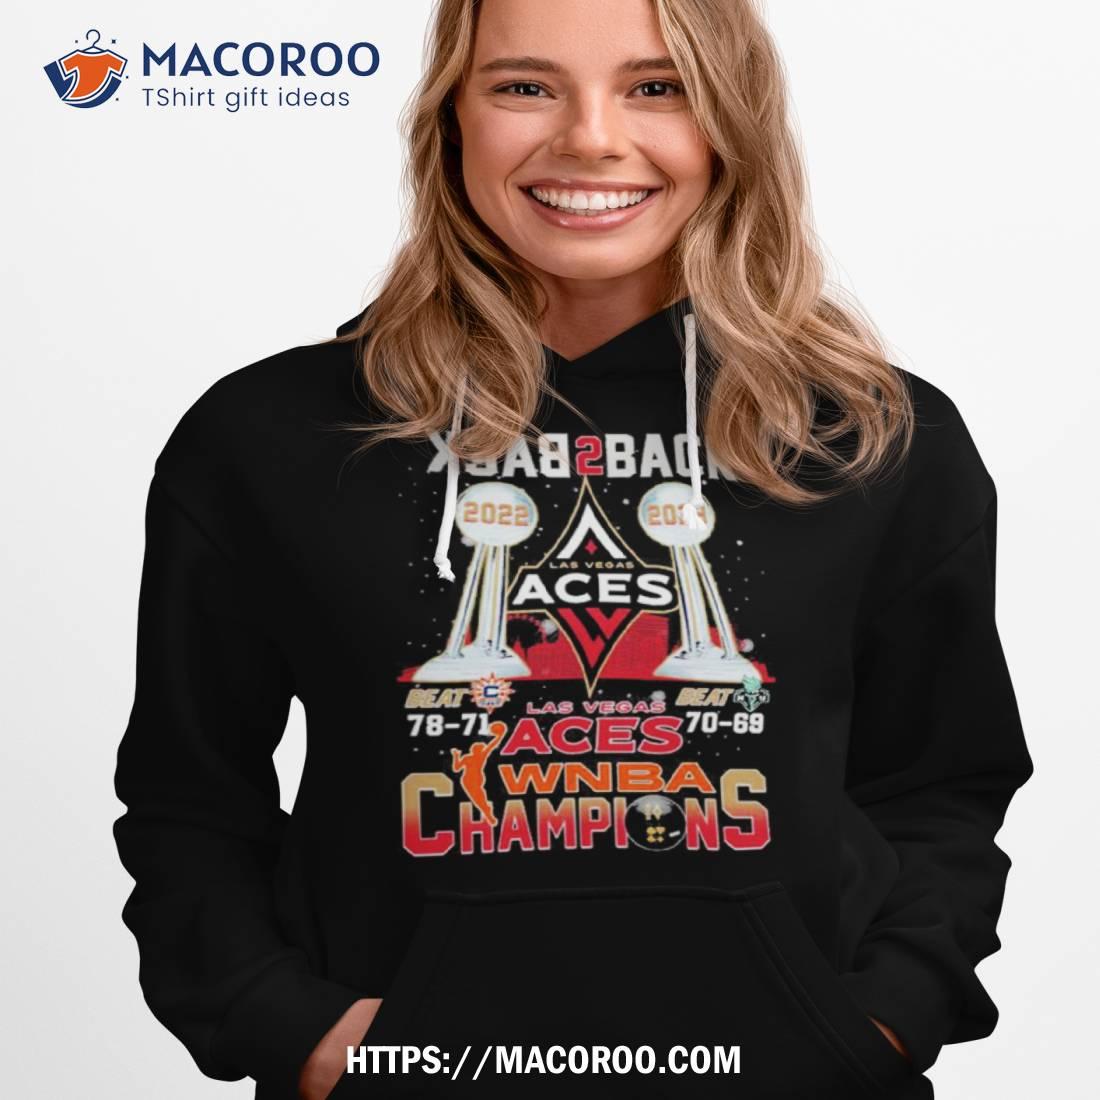 Las Vegas Aces Champs 2022 WNBA Finals Champions Vintage T-Shirt